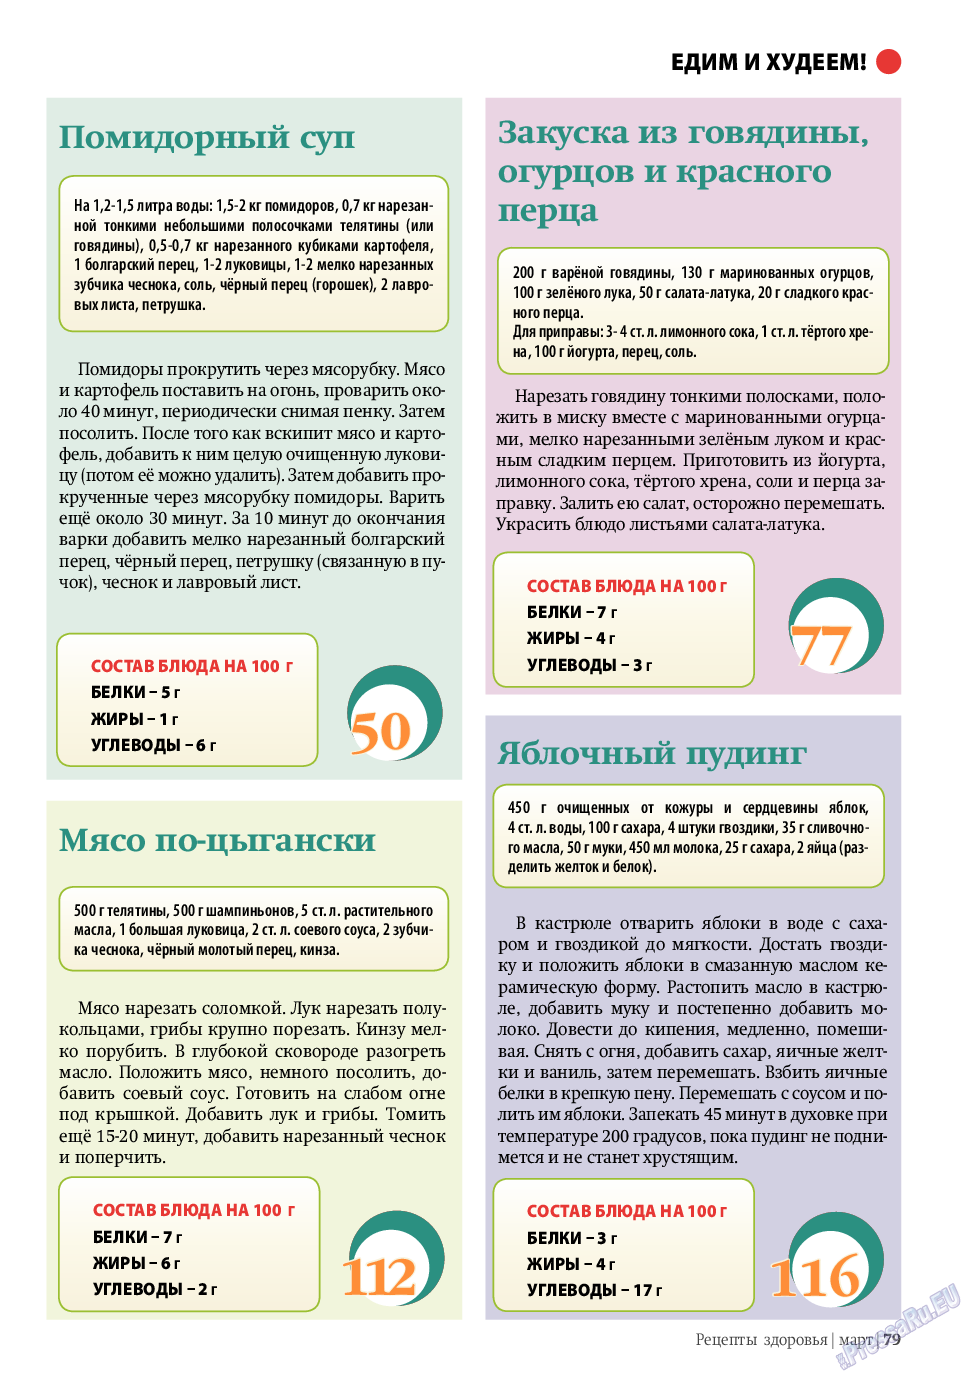 Рецепты здоровья, журнал. 2011 №3 стр.79